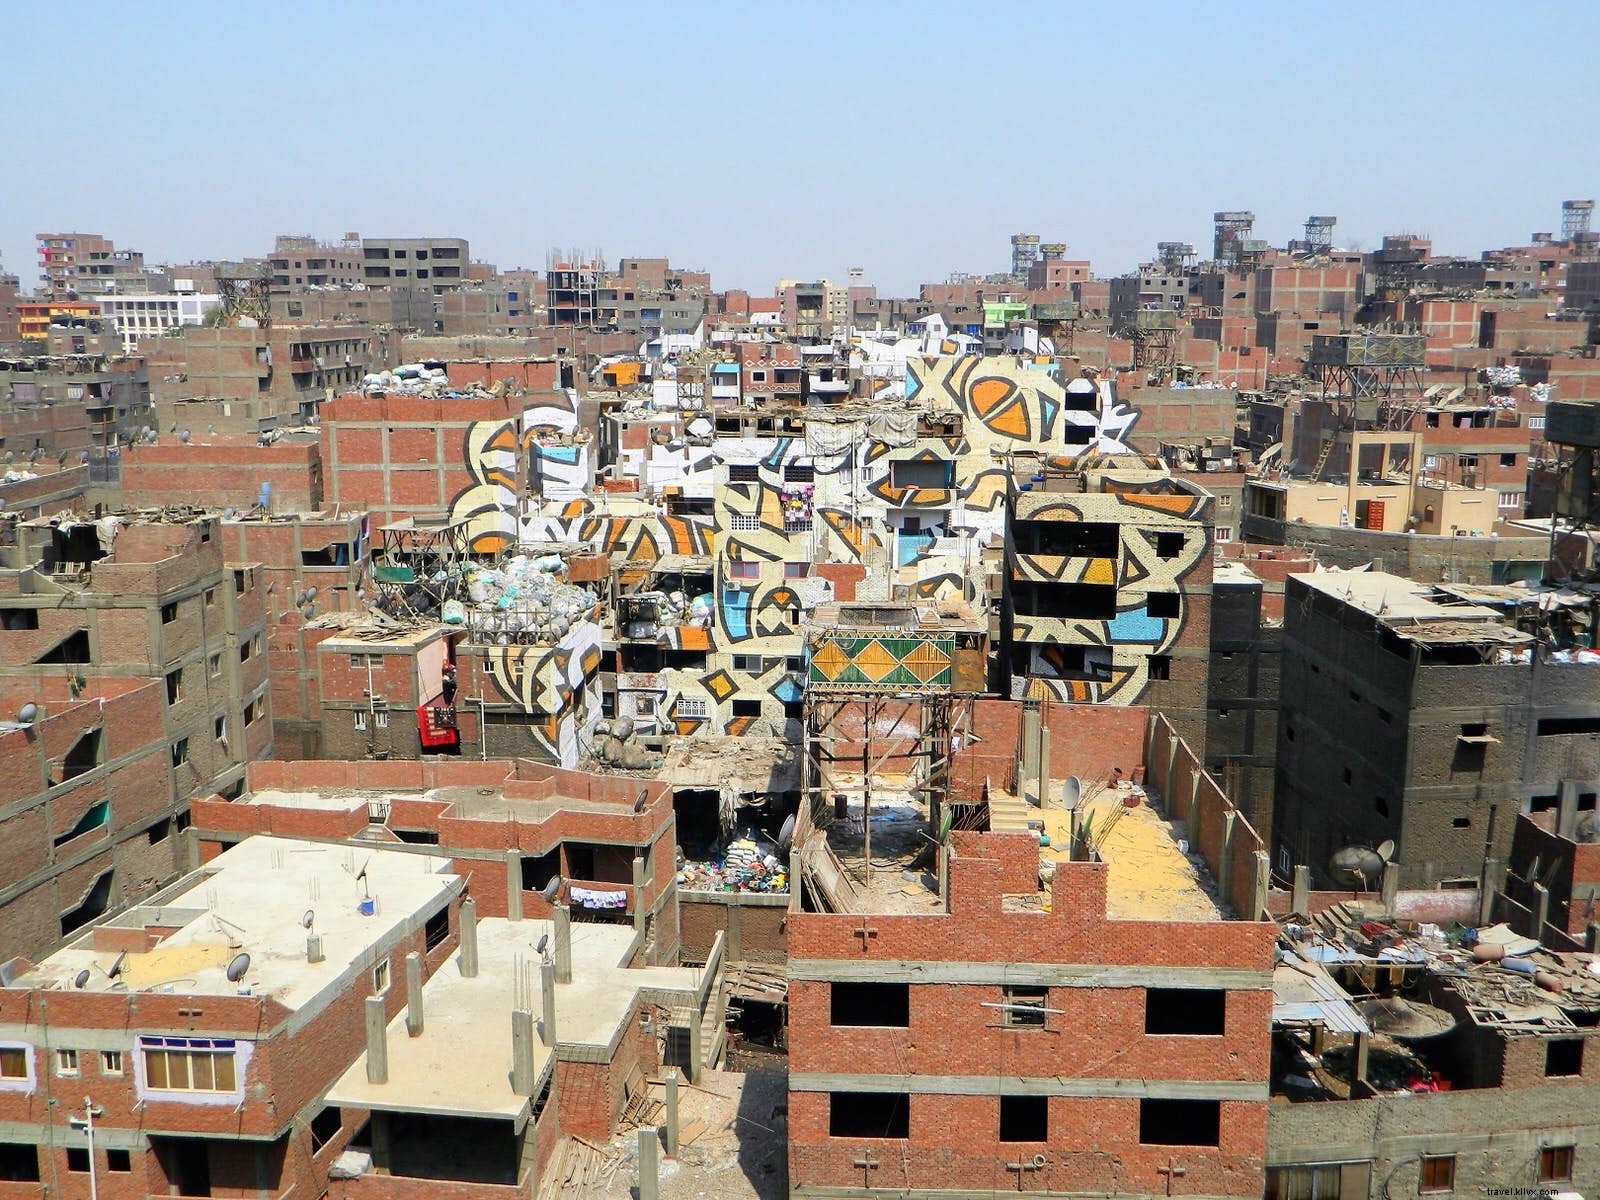 Le Caire caché :un guide des secrets les mieux gardés de la ville 